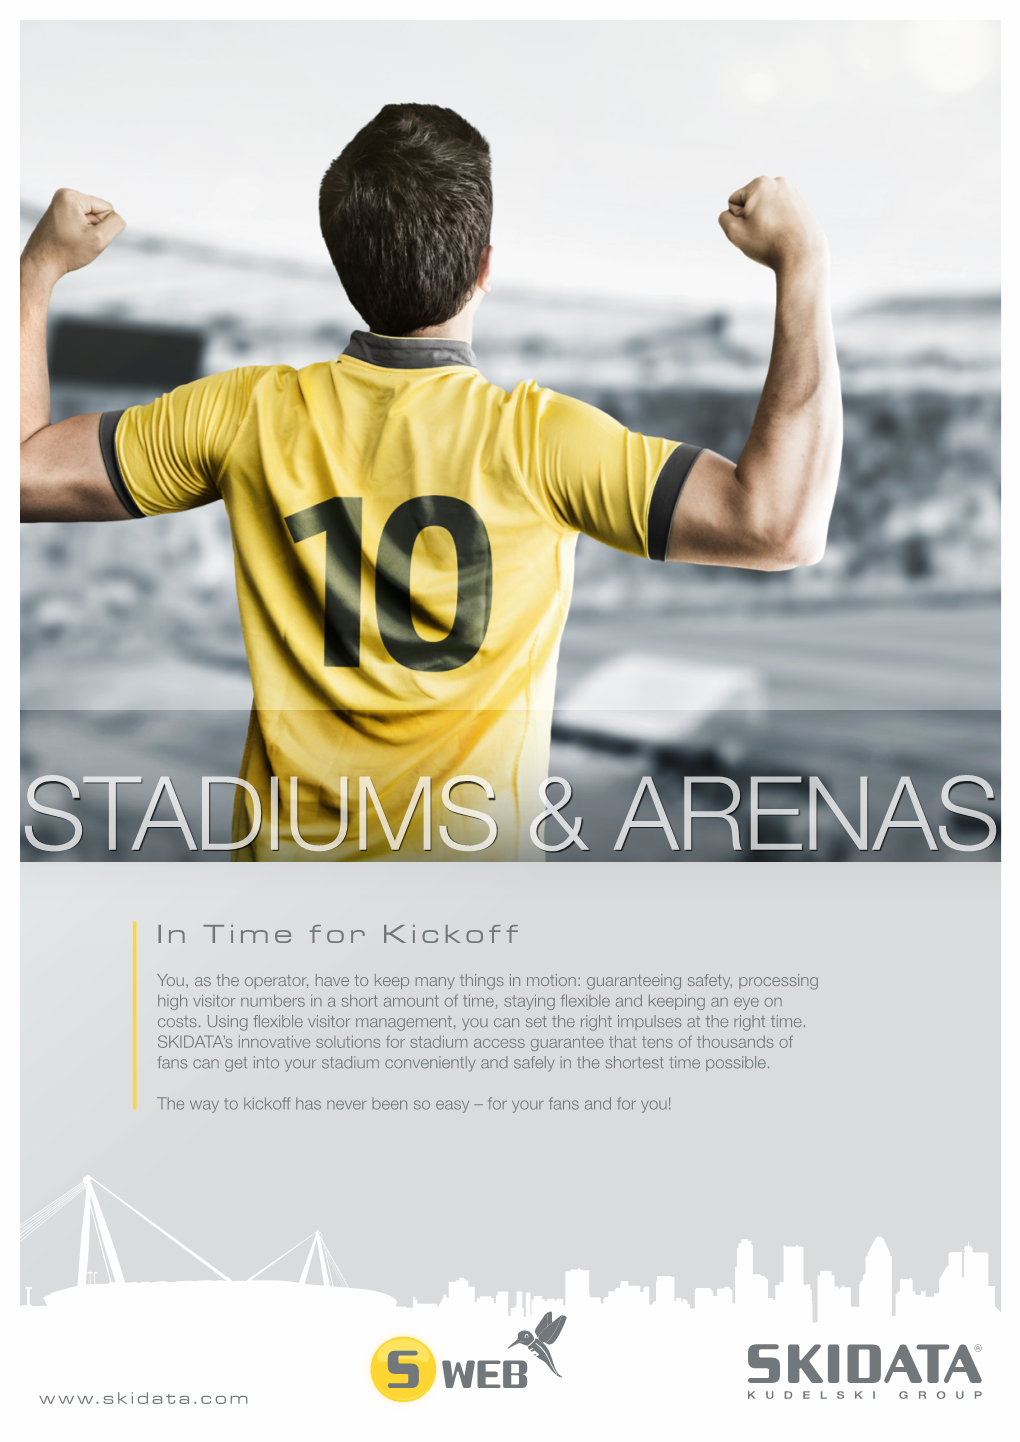 Stadiums & Arenas